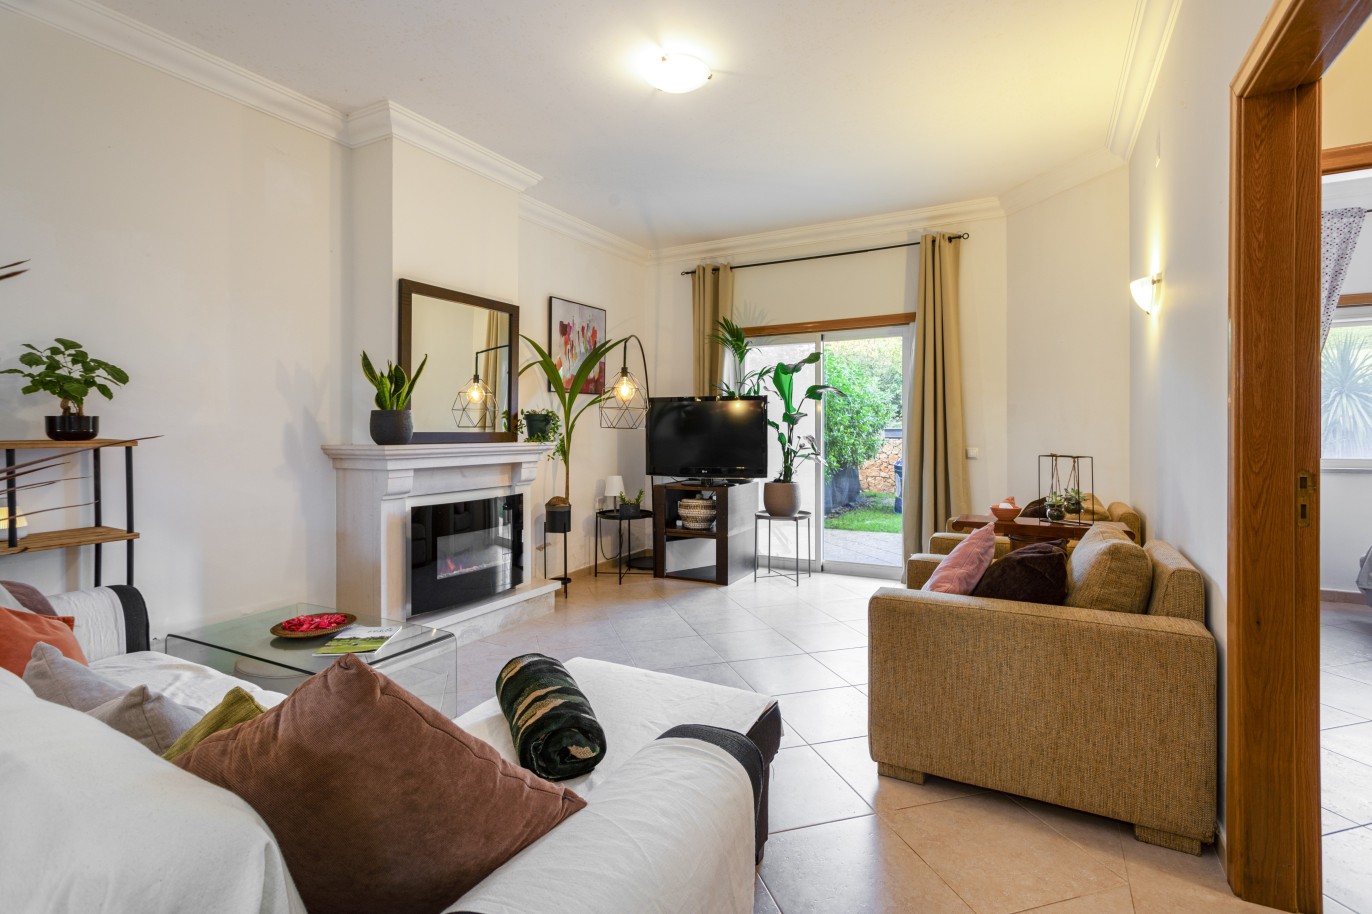 Villa mit 3 Schlafzimmern, in privater Wohnanlage, zu verkaufen in Lagos, Algarve_246268